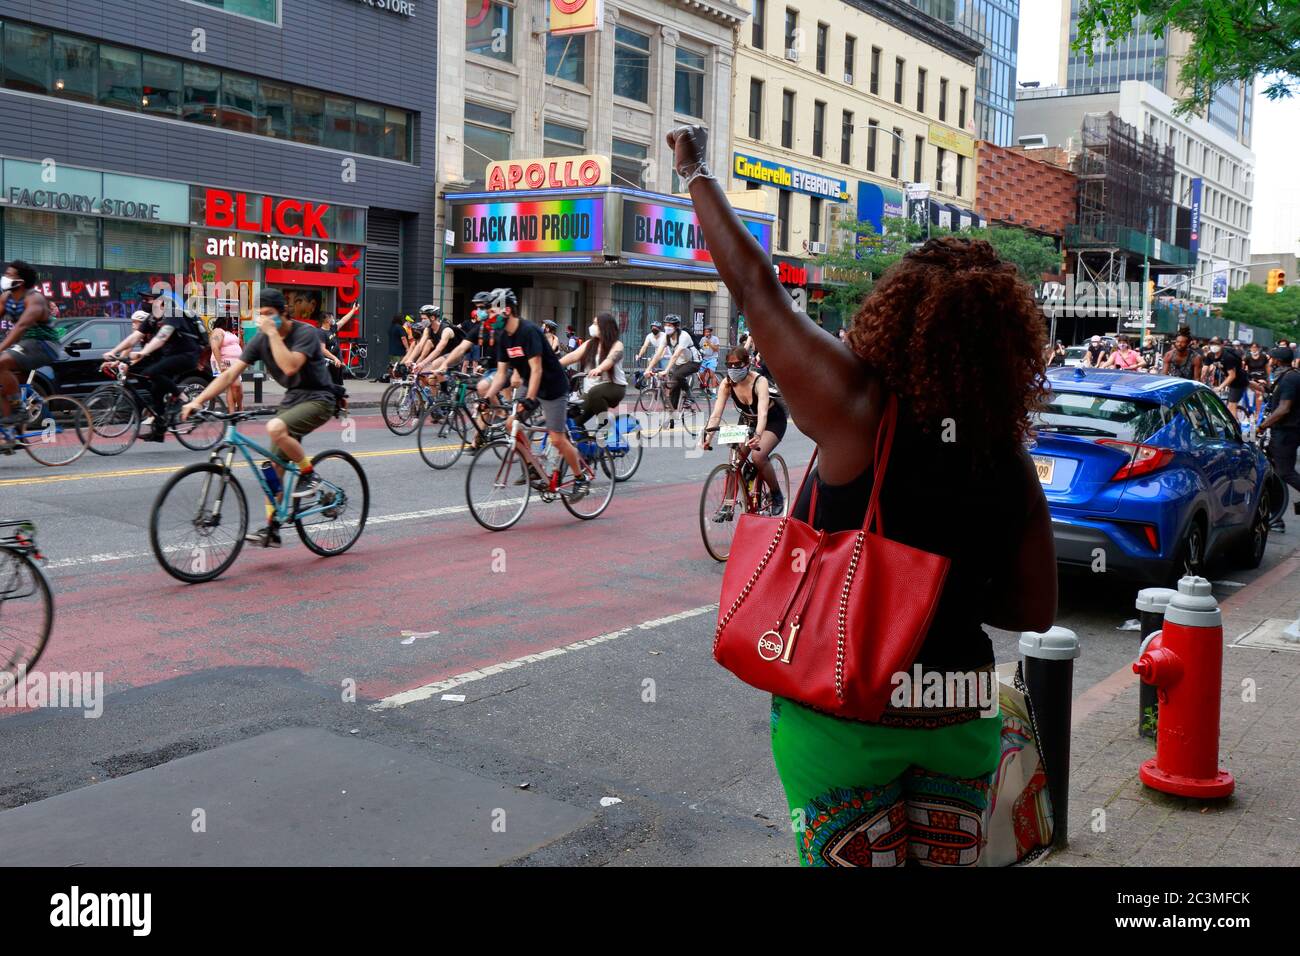 Nueva York, NY, 20 de junio de 2020. Una mujer con un puño levantado se encuentra frente al Teatro Apollo con 'Negro y orgulloso' en la marquesina mientras los manifestantes en ciclistas pasan. La protesta de la bicicleta fue un viaje de solidaridad de la materia de vidas negras que pidió justicia en una serie reciente de asesinatos de la policía estadounidense: George Floyd, Breonna Taylor, y muchos otros. El paseo en bicicleta fue organizado por el colectivo llamado Street Riders NYC. Varios miles de personas participaron en la manifestación itinerante viajando desde Times Square, Harlem y Battery Park. 20 de junio de 2020 Foto de stock